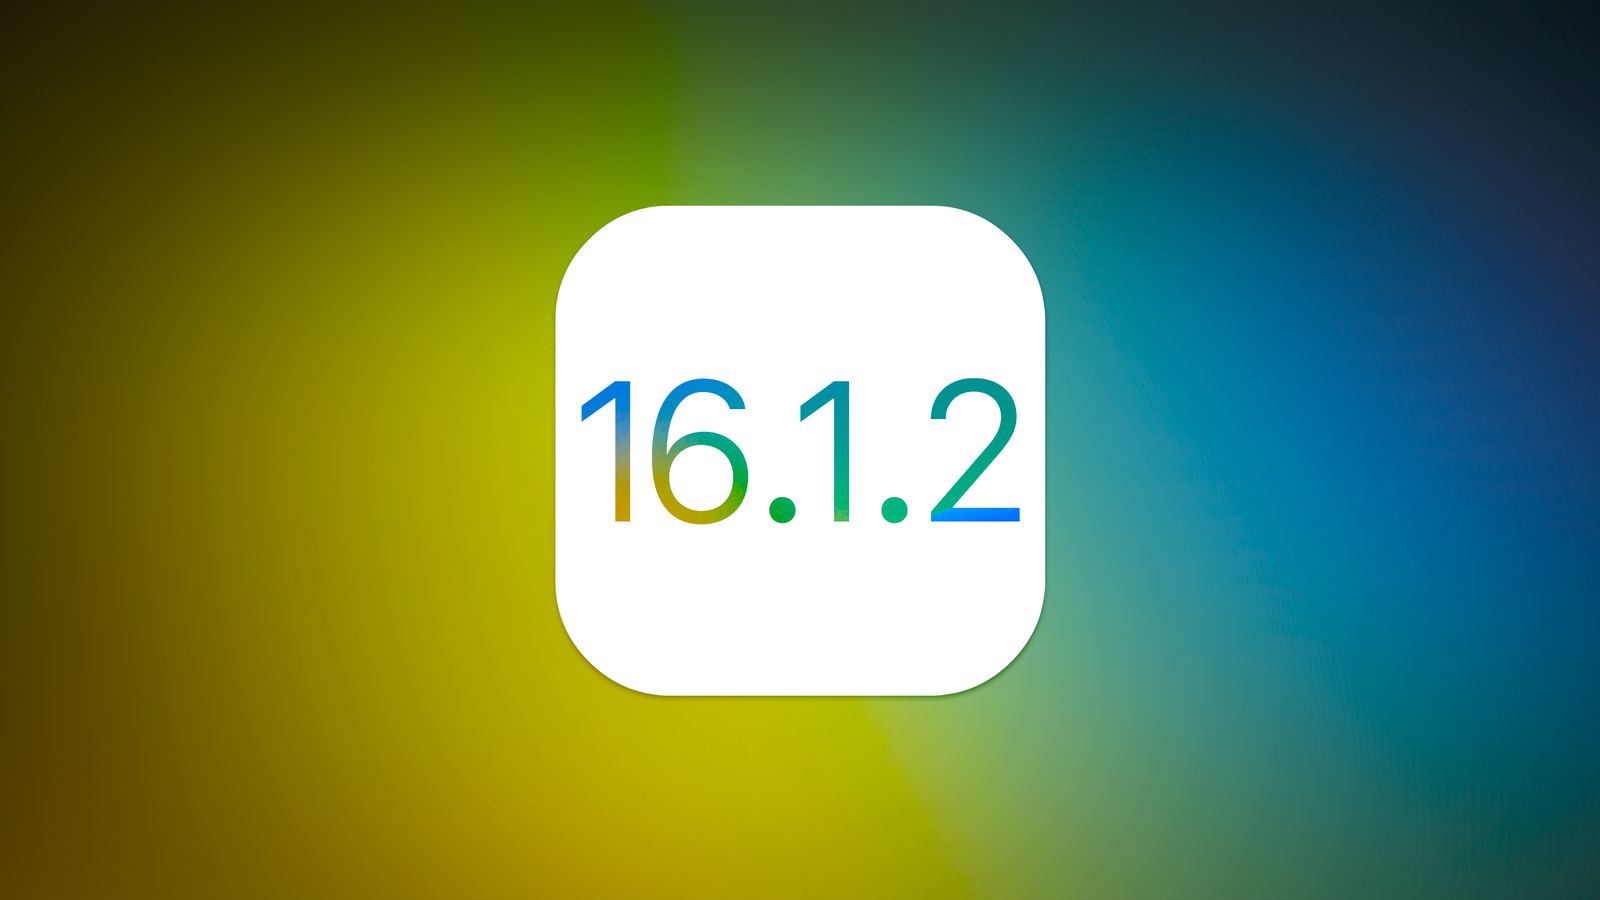 Вышла iOS 16.1.2 с улучшениями для операторов и оптимизацией обнаружения аварий